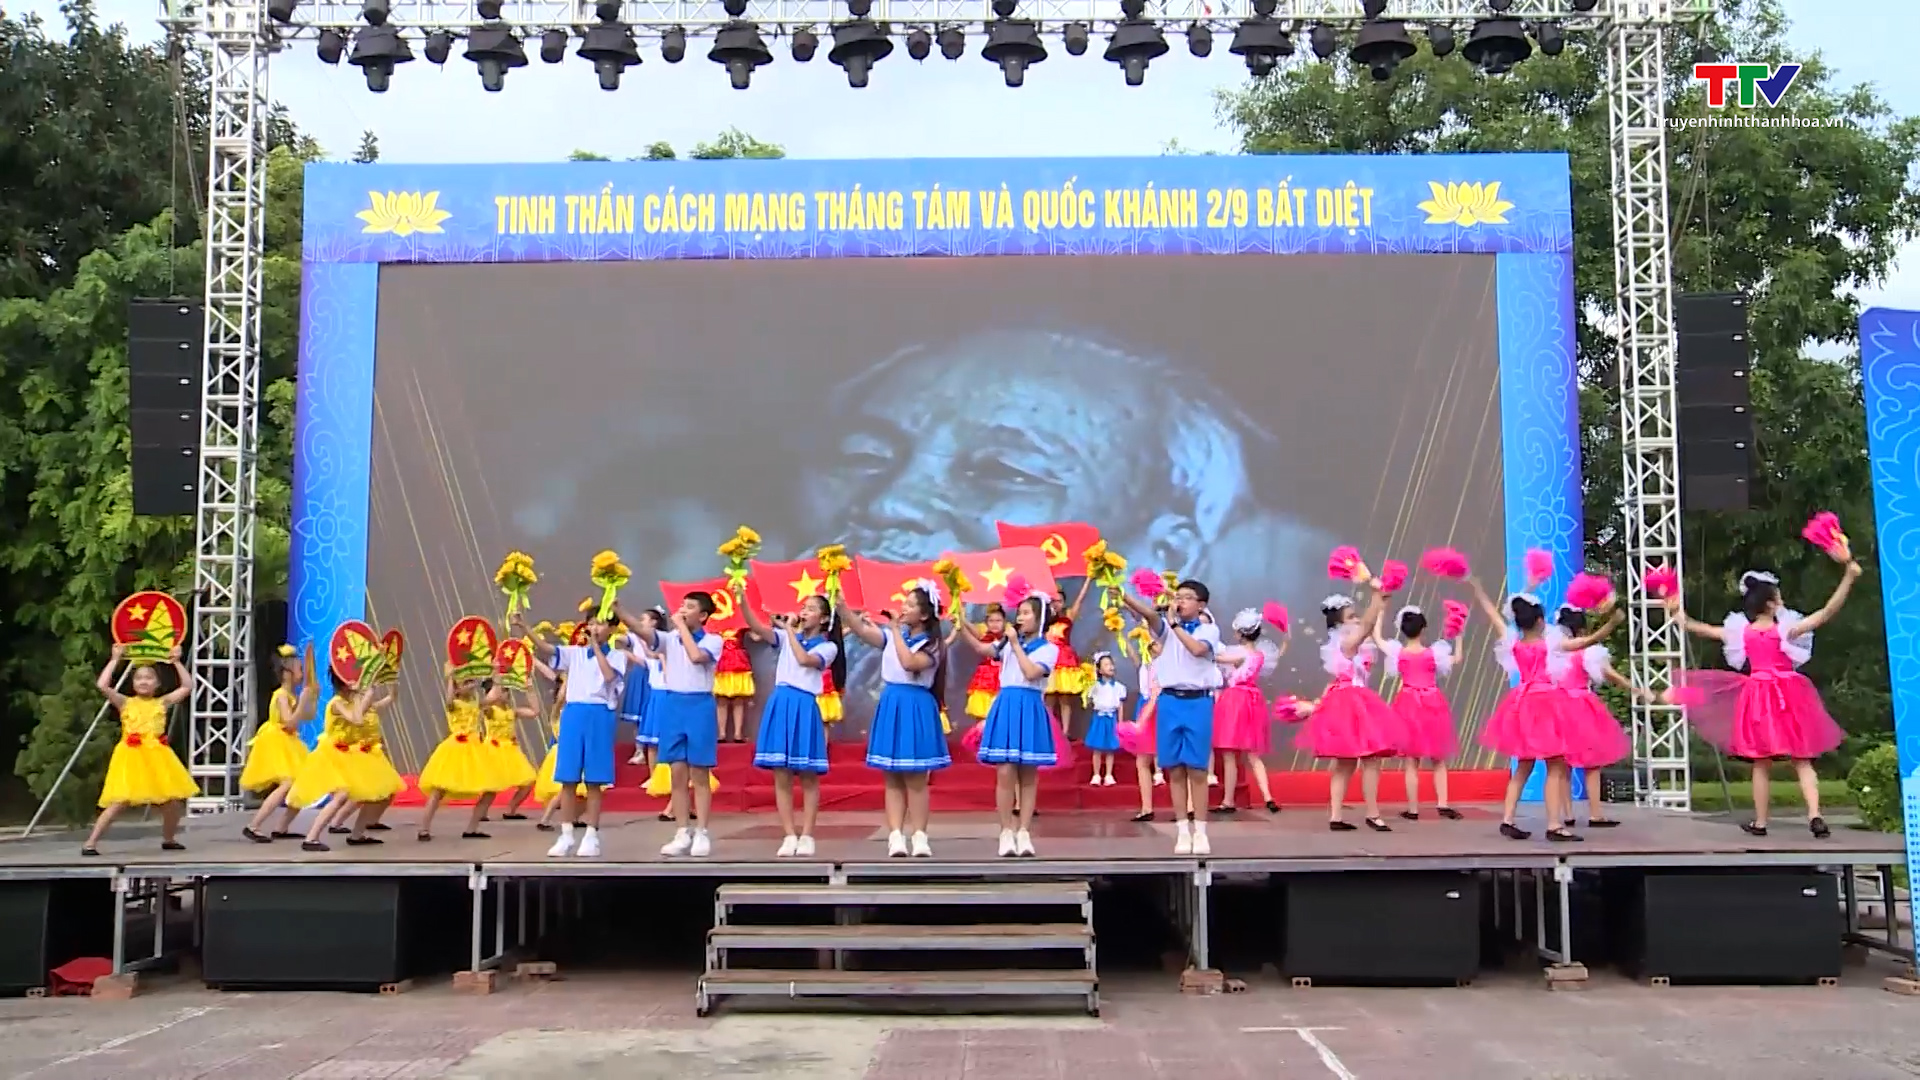 Thành phố Thanh Hóa sẵn sàng tổ chức các hoạt động chào mừng 78 năm Quốc khánh 2/9 - Ảnh 4.